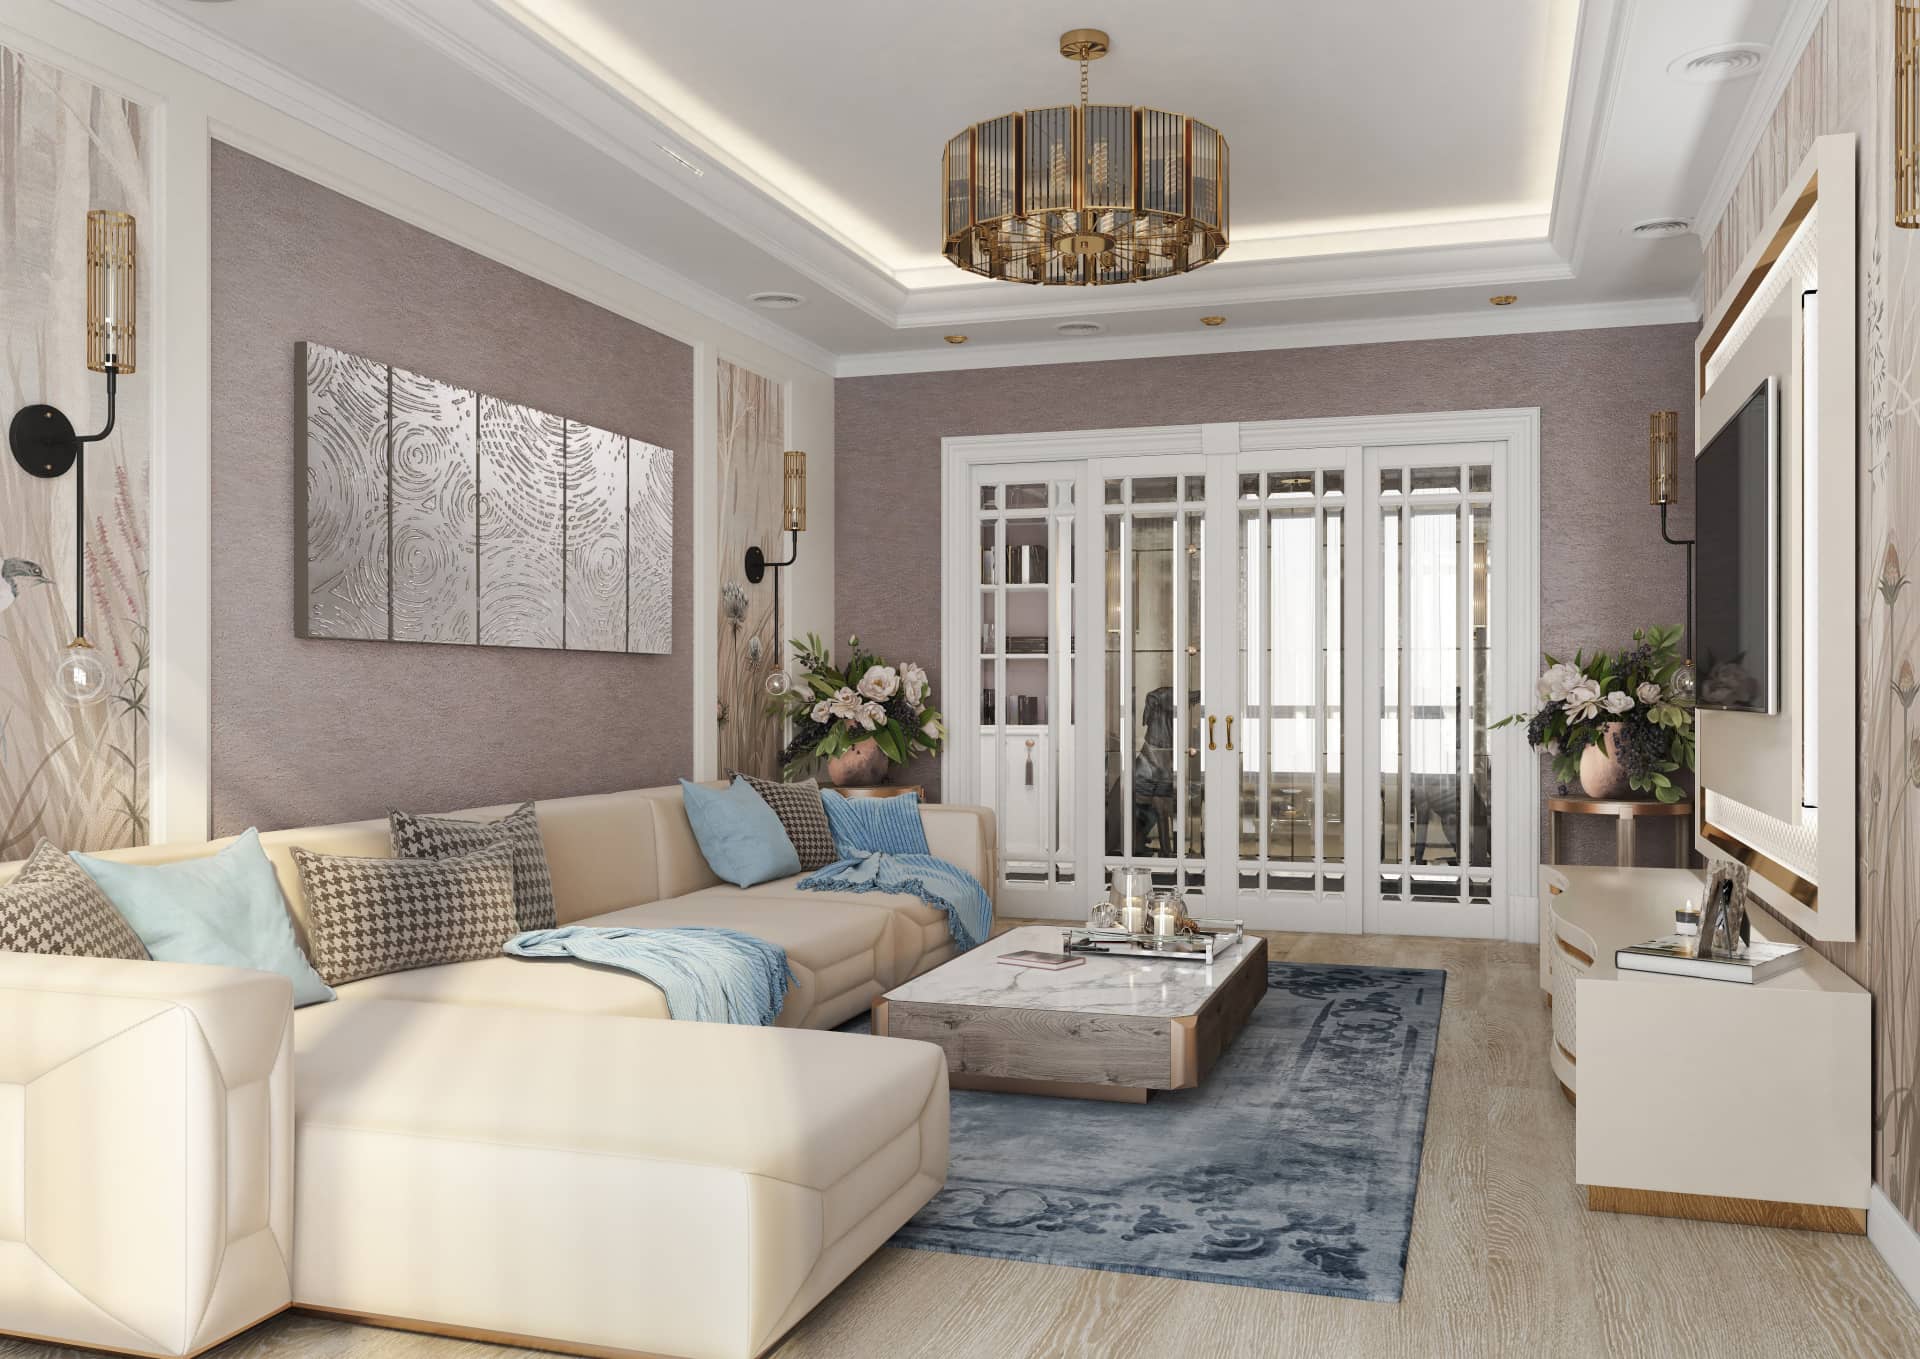 Оформление интерьера гостиной трехкомнатной квартиры в коричневый цвет в стиле современной классики. Фото № 56578.